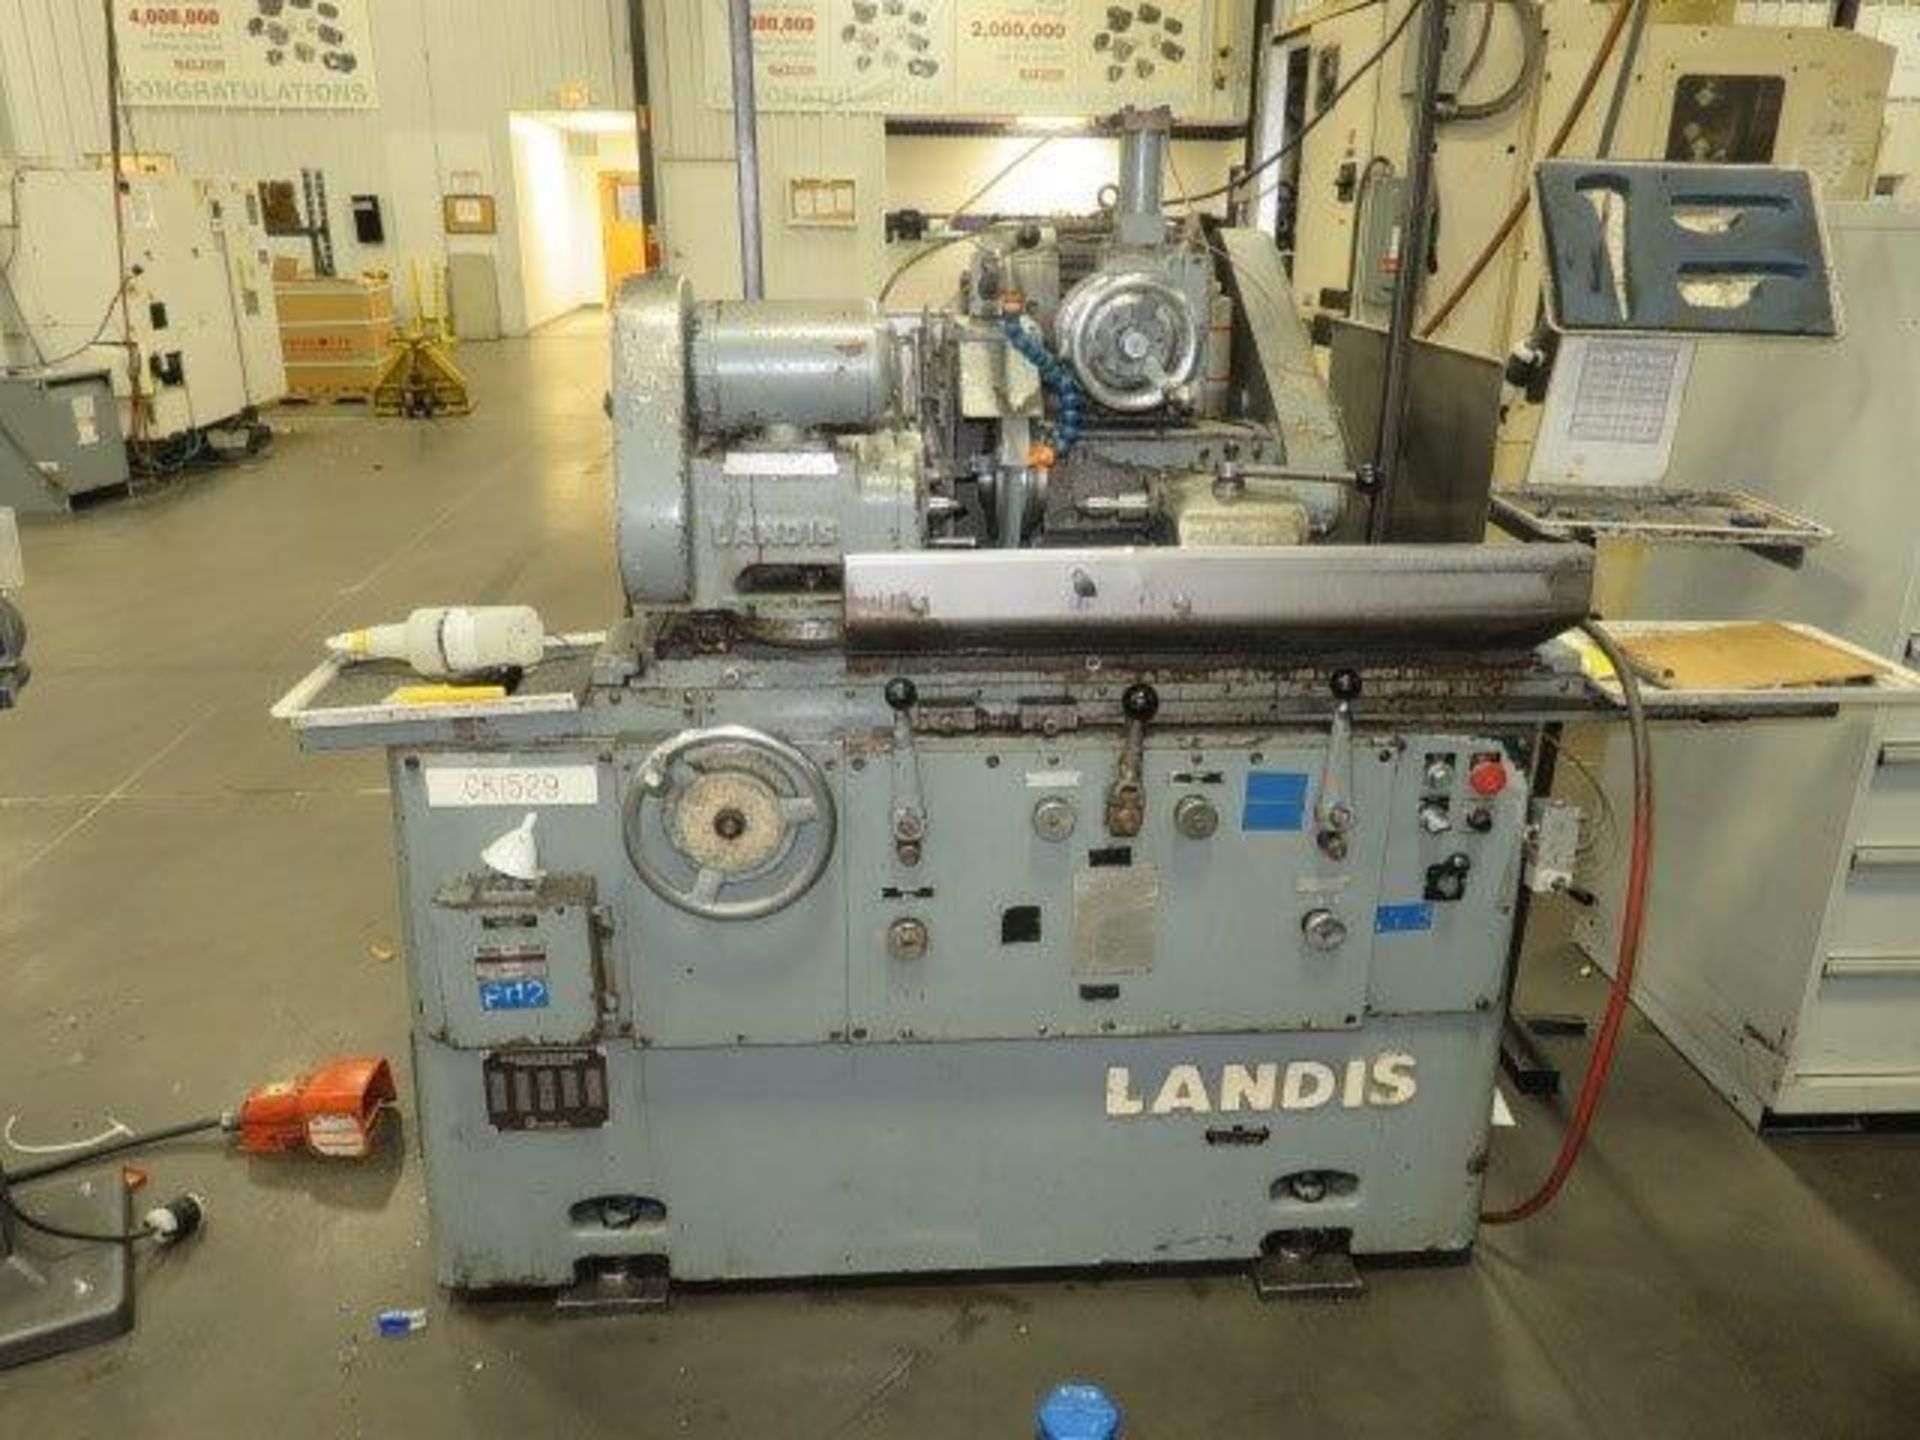 Landis Grinder - Asset I.D. CK1529